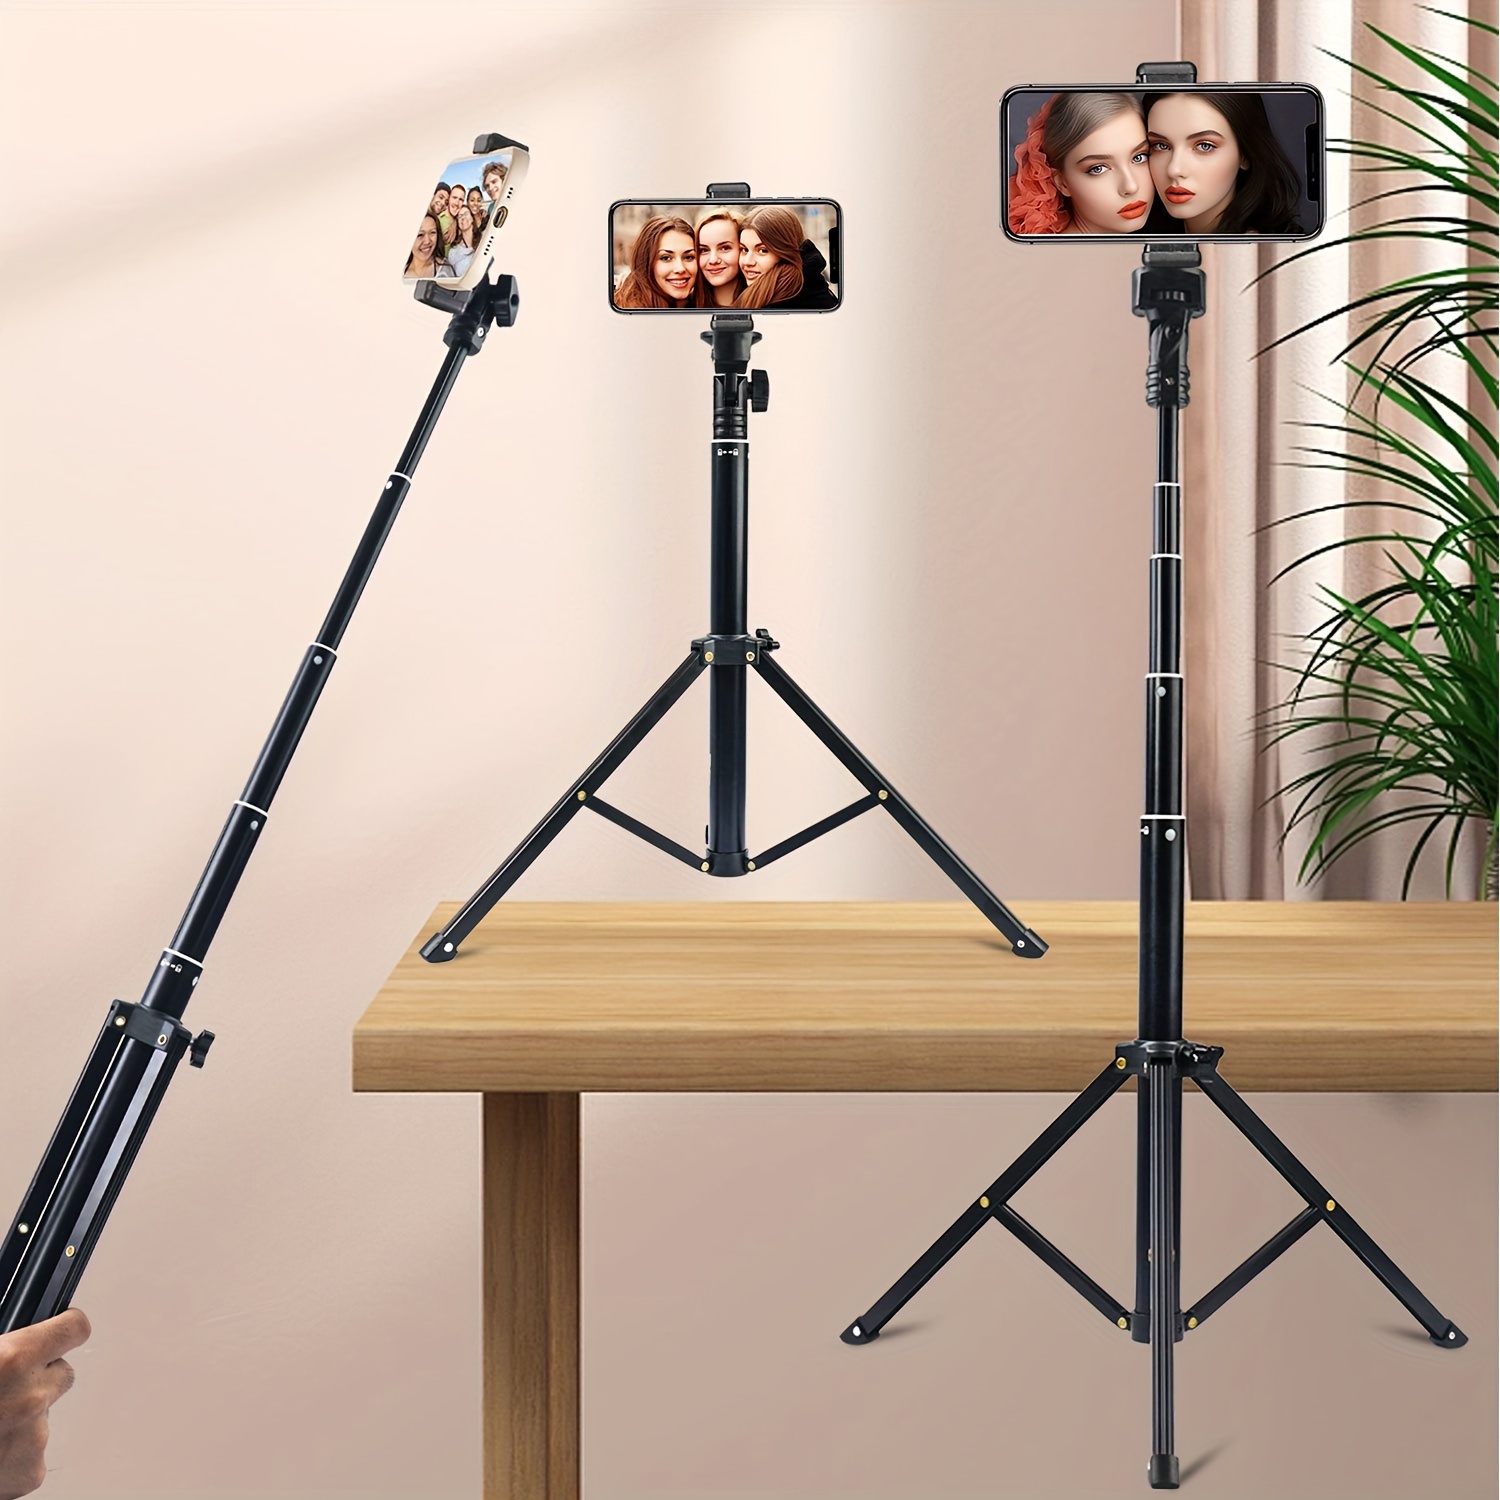 Trípode de palo selfie para teléfono móvil 1m con bluetooth